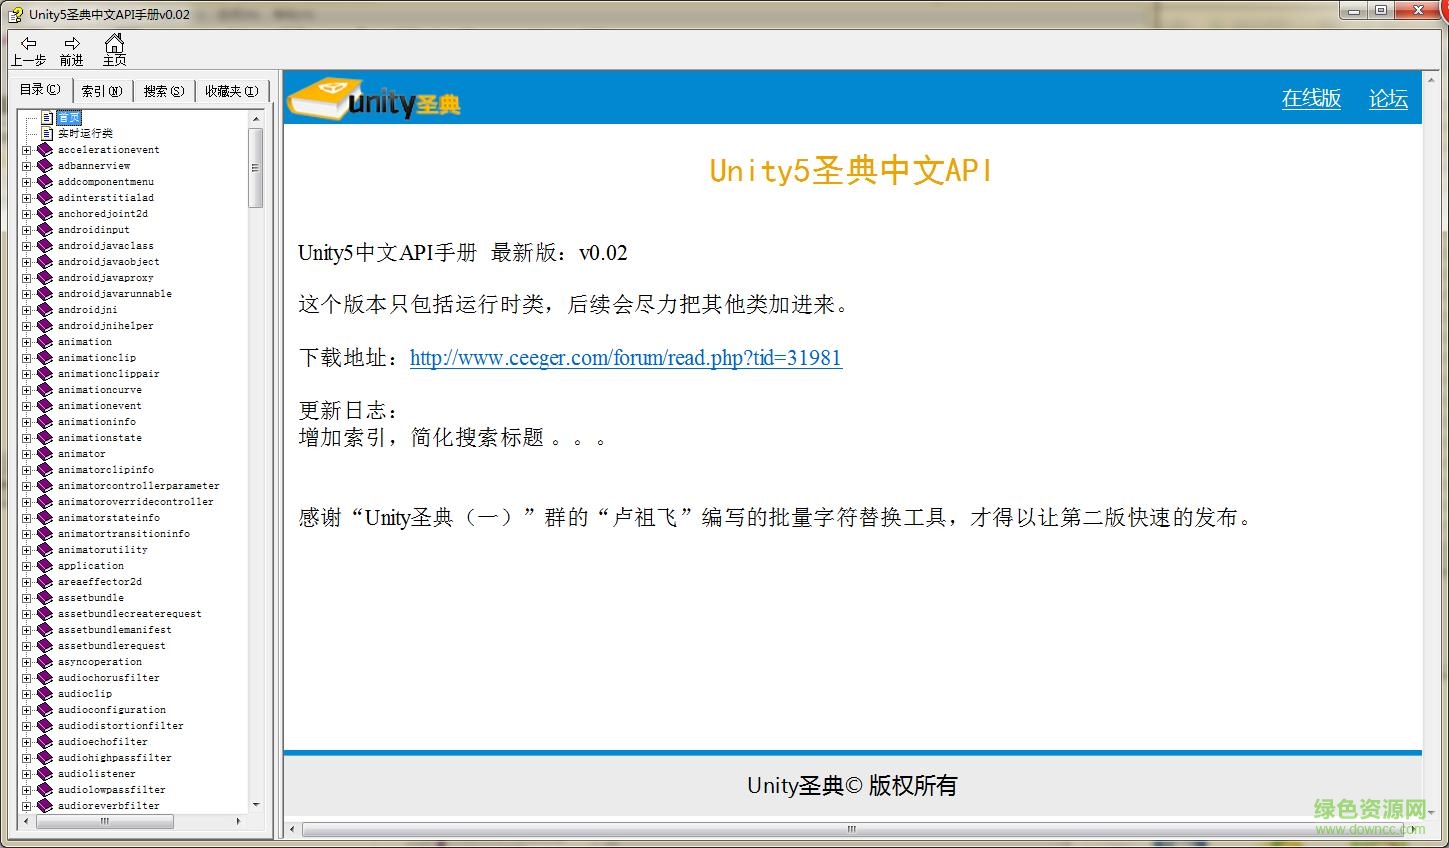 unity3d圣典中文手册 v0.02 chm最新版0